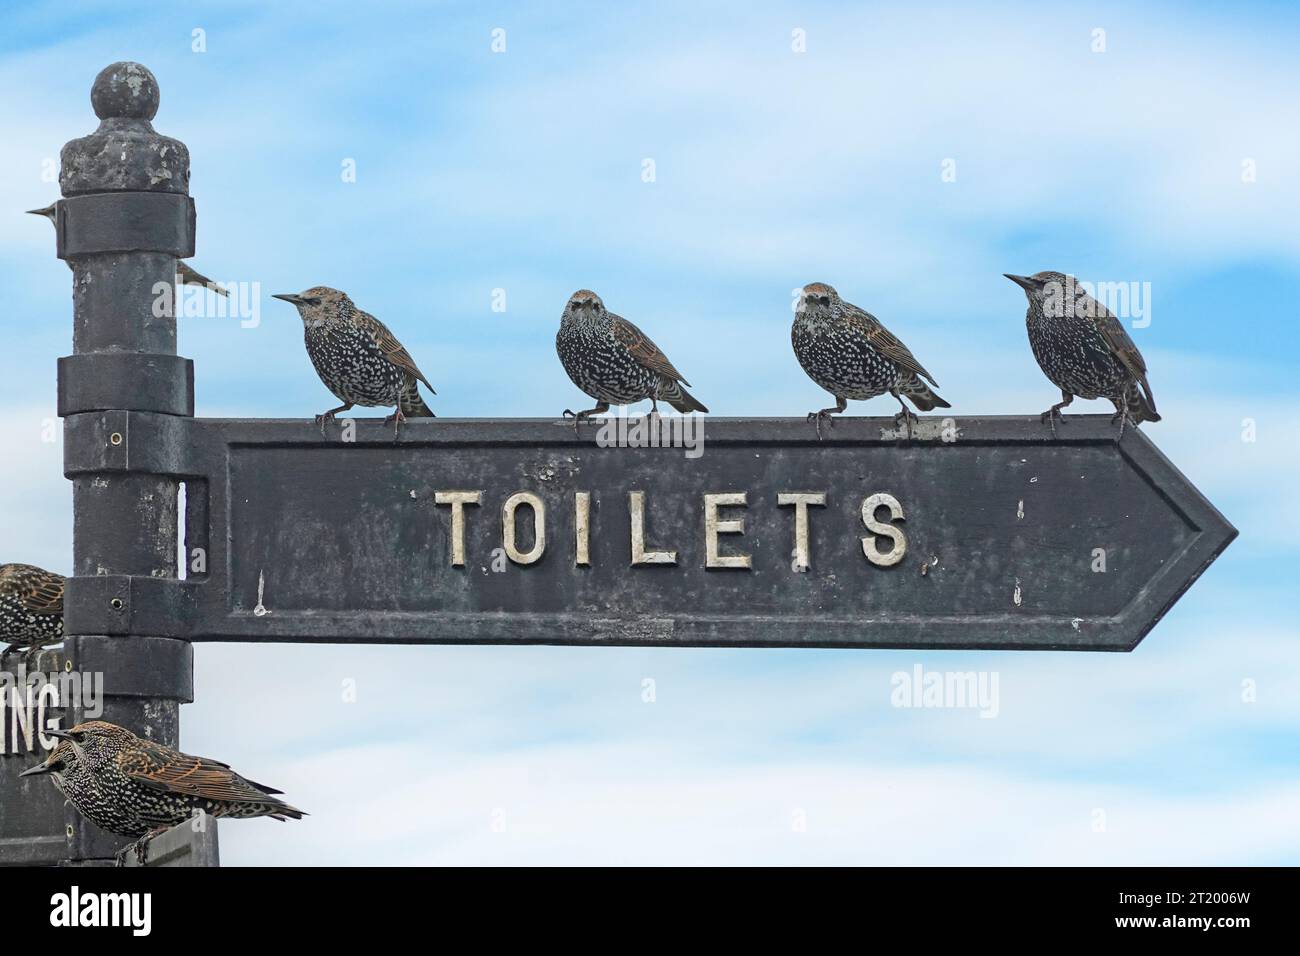 Starlinge, die in der Schlange stehen, stehen auf Toiletten-Schild, das in die falsche Richtung zeigt humorvolles Bild von Vögeln, die geduldig warten, wenn die Natur England Großbritannien nennt Stockfoto